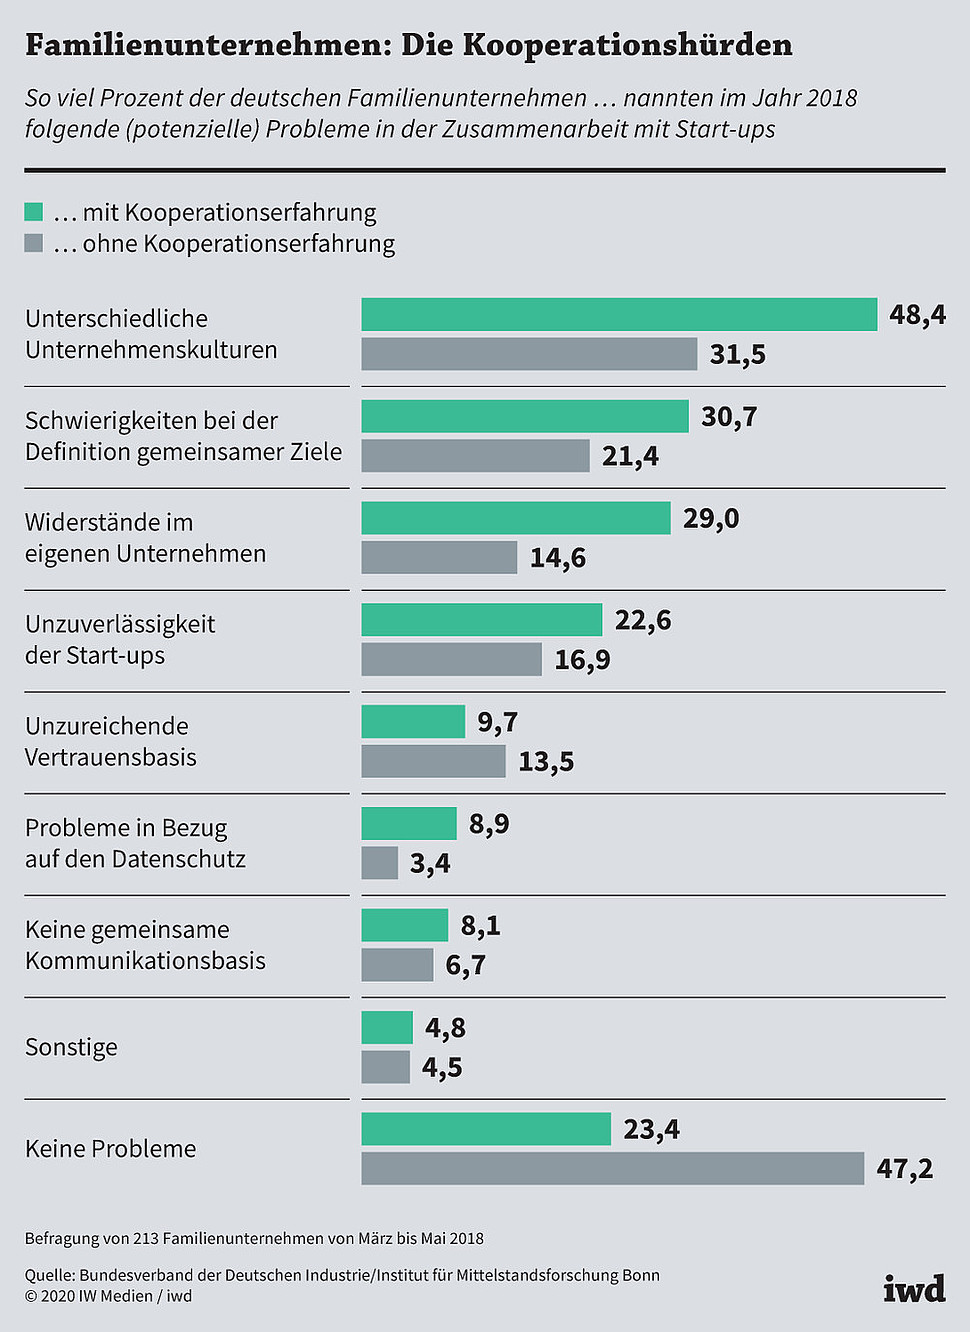 So viel Prozent der deutschen Familienunternehmen nannten im Jahr 2018 folgende (potenzielle) Probleme in der Zusammenarbeit mit Start-ups